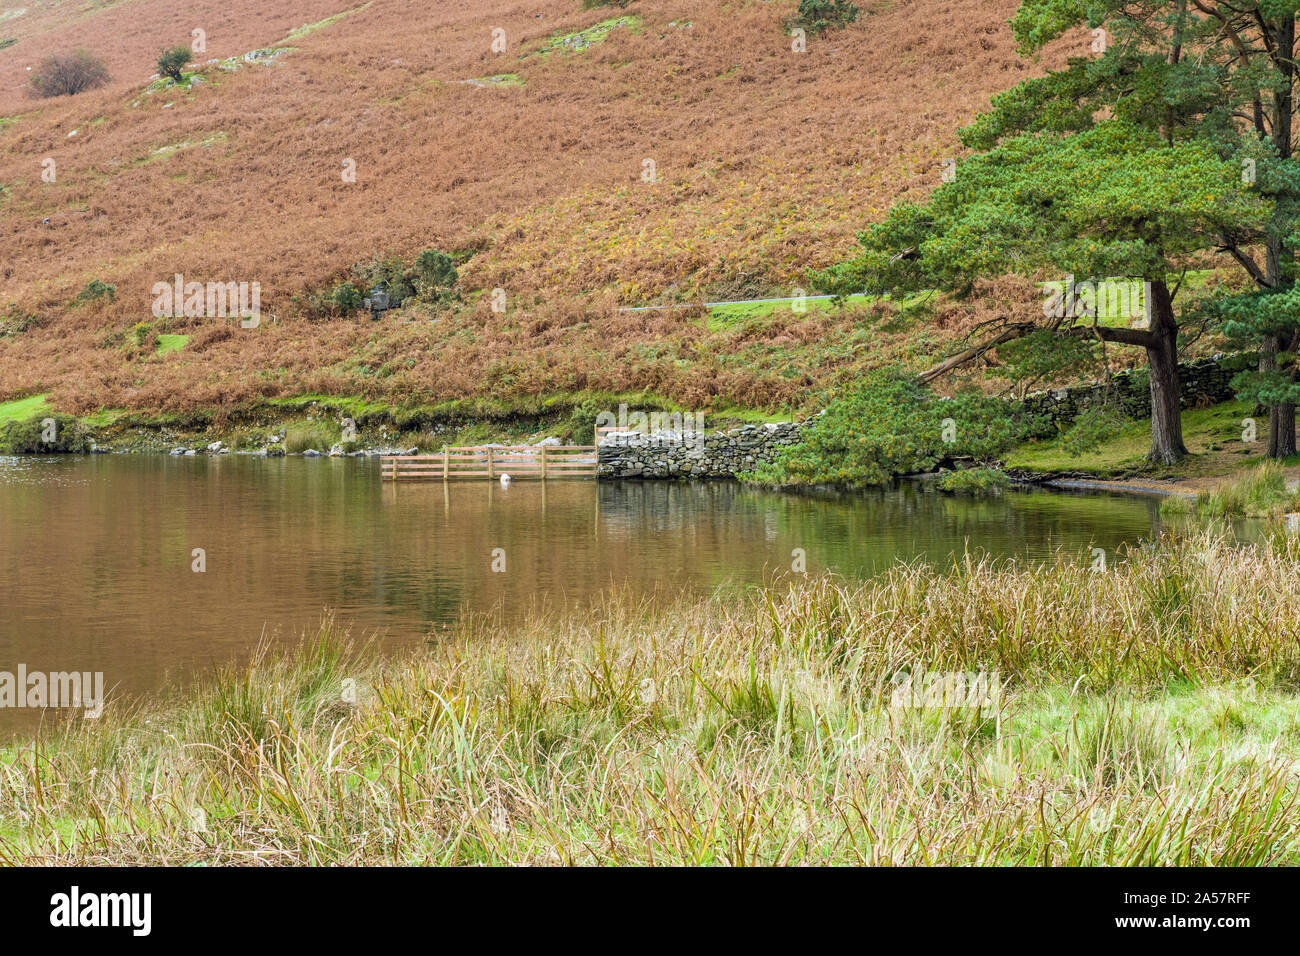 Les rives de l'eau Crummock dans le parc national du Lake District Cumbria. Notez le mur de la pierre sèche et la clôture en bois qui glissent dans le lac. Banque D'Images